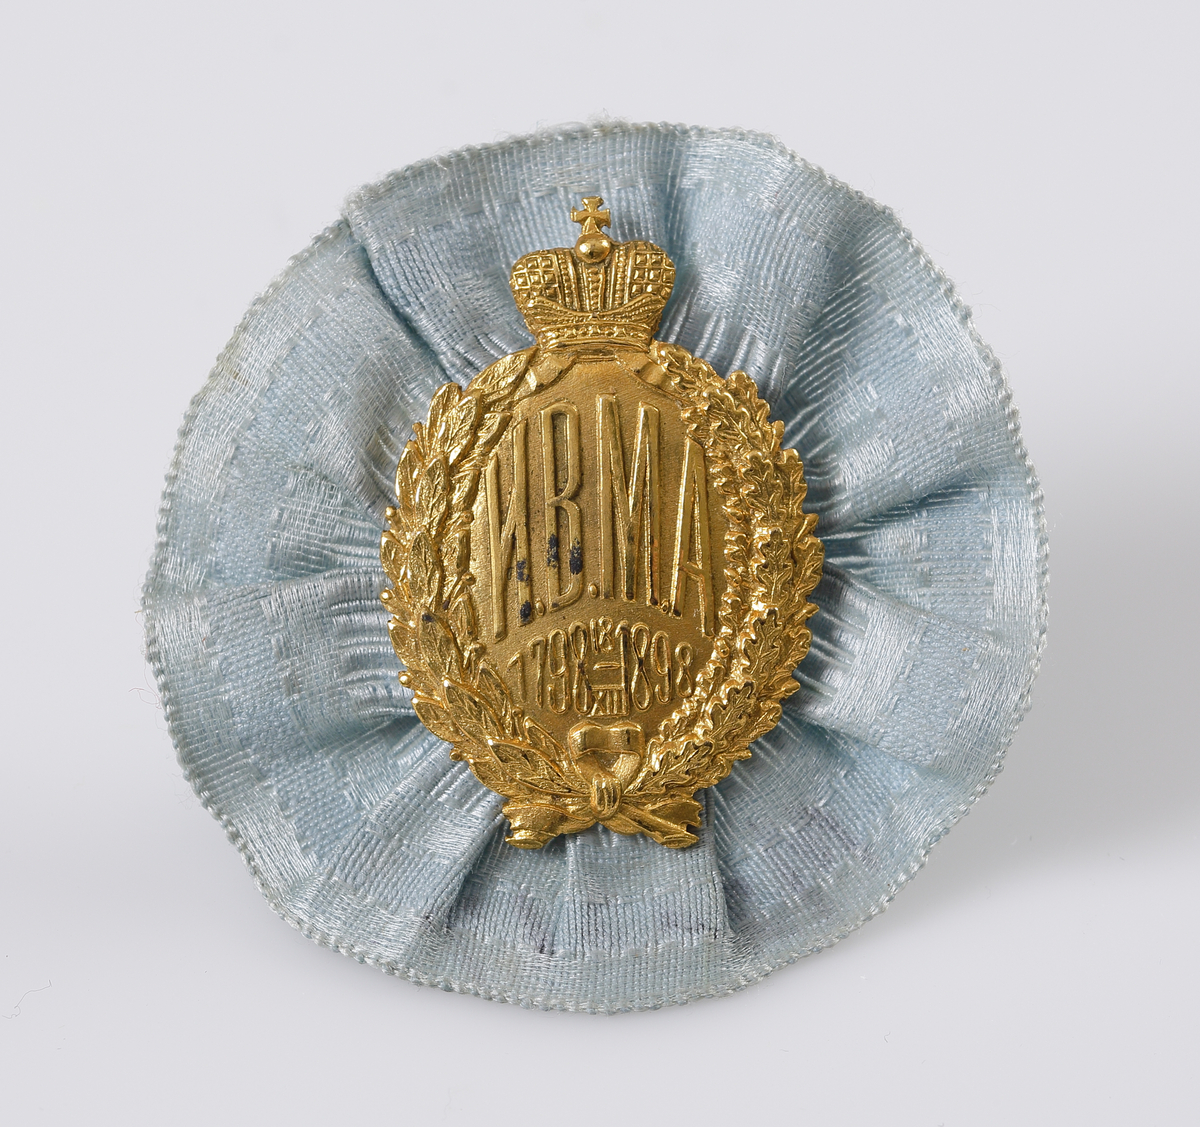 Kotiljong/brosch i ljusblått siden och pressat emblem i gul metall med text; "HBMA 1798 18/XII 1898", under rysk kejserlig krona.

Inskrivet i huvudbok 1969.